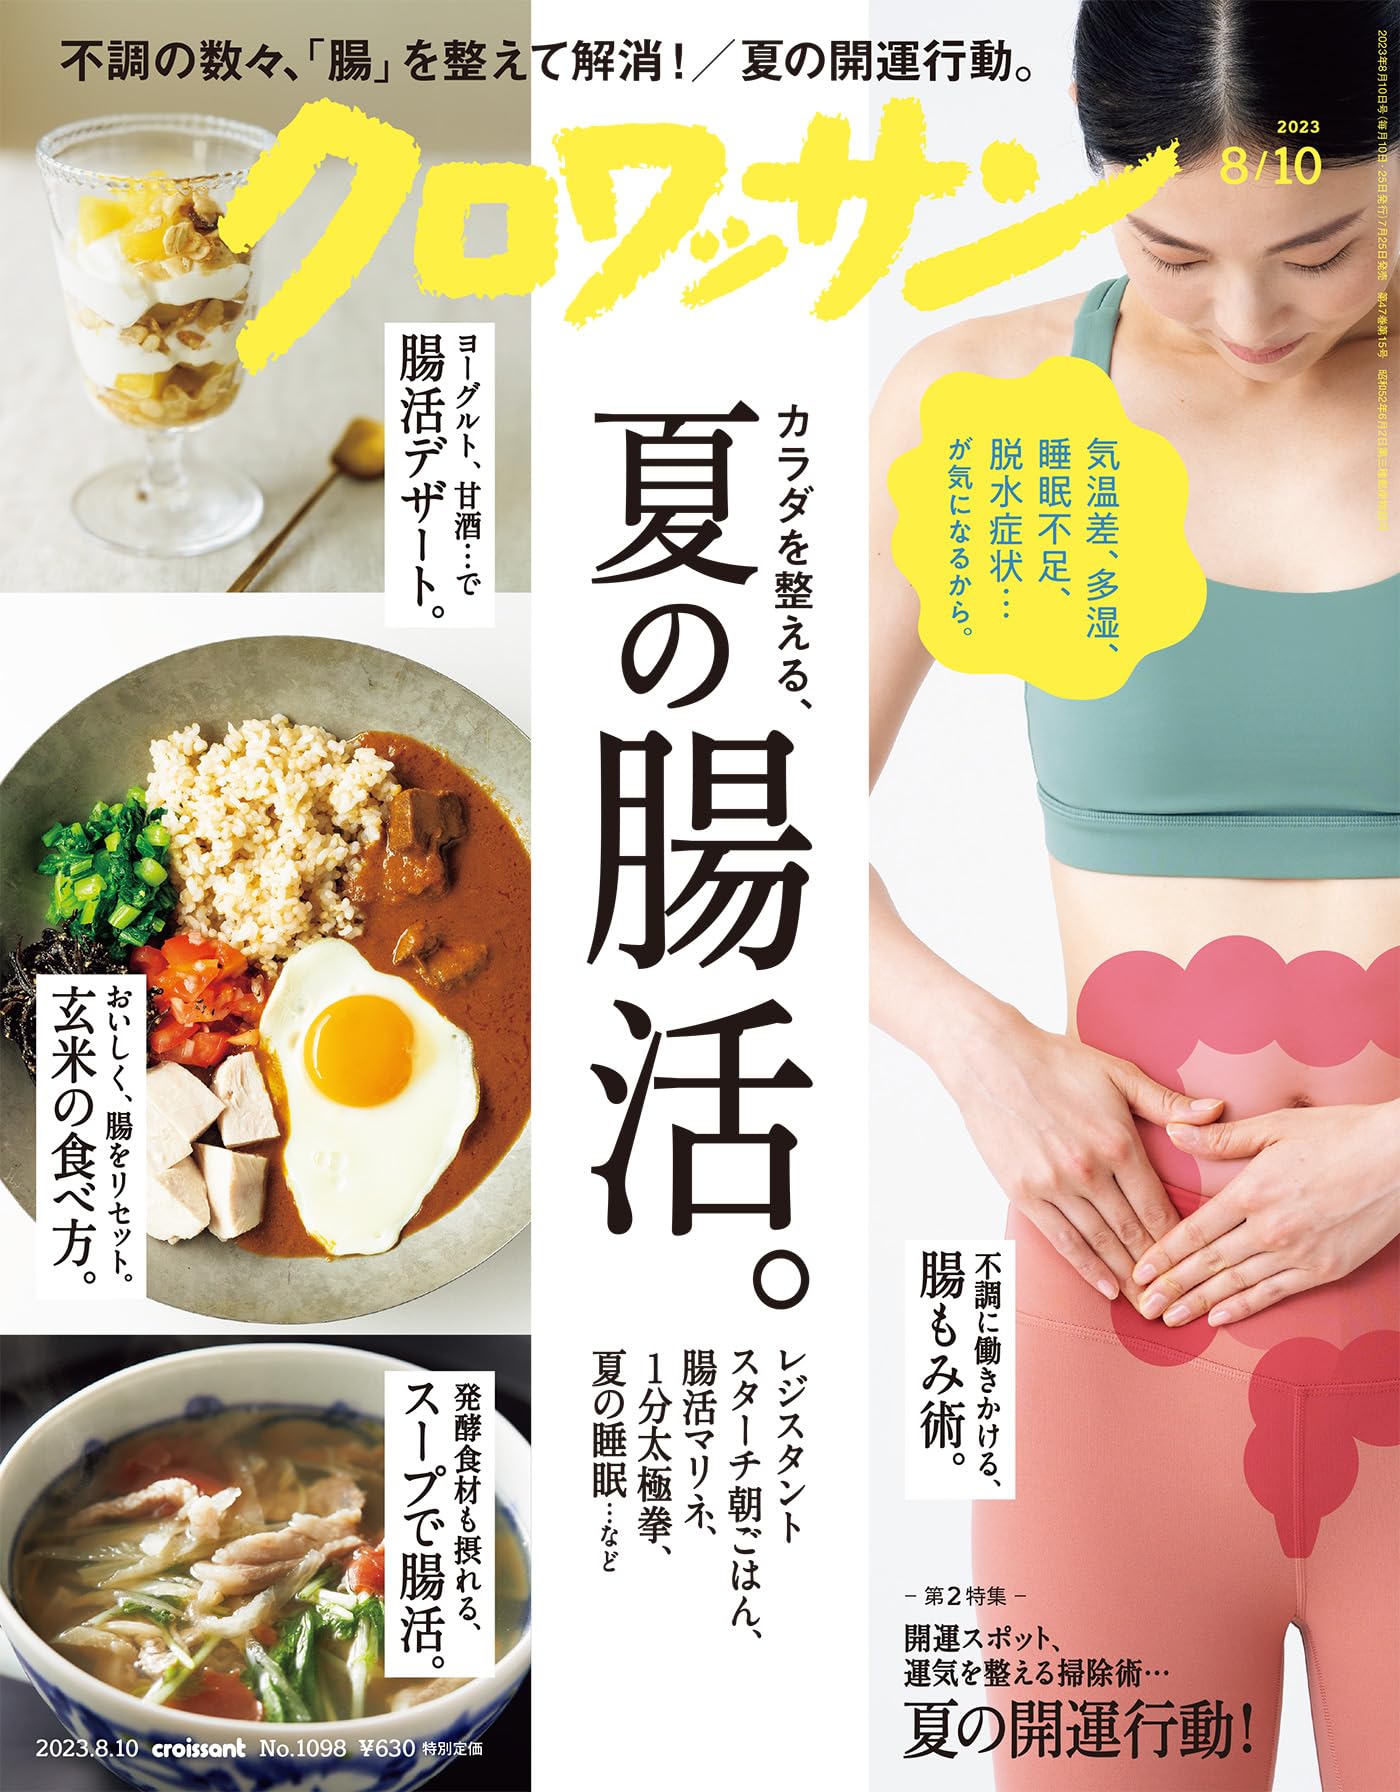 7月25日発売の『クロワッサン』最新号は「カラダを整える、夏の腸活。」